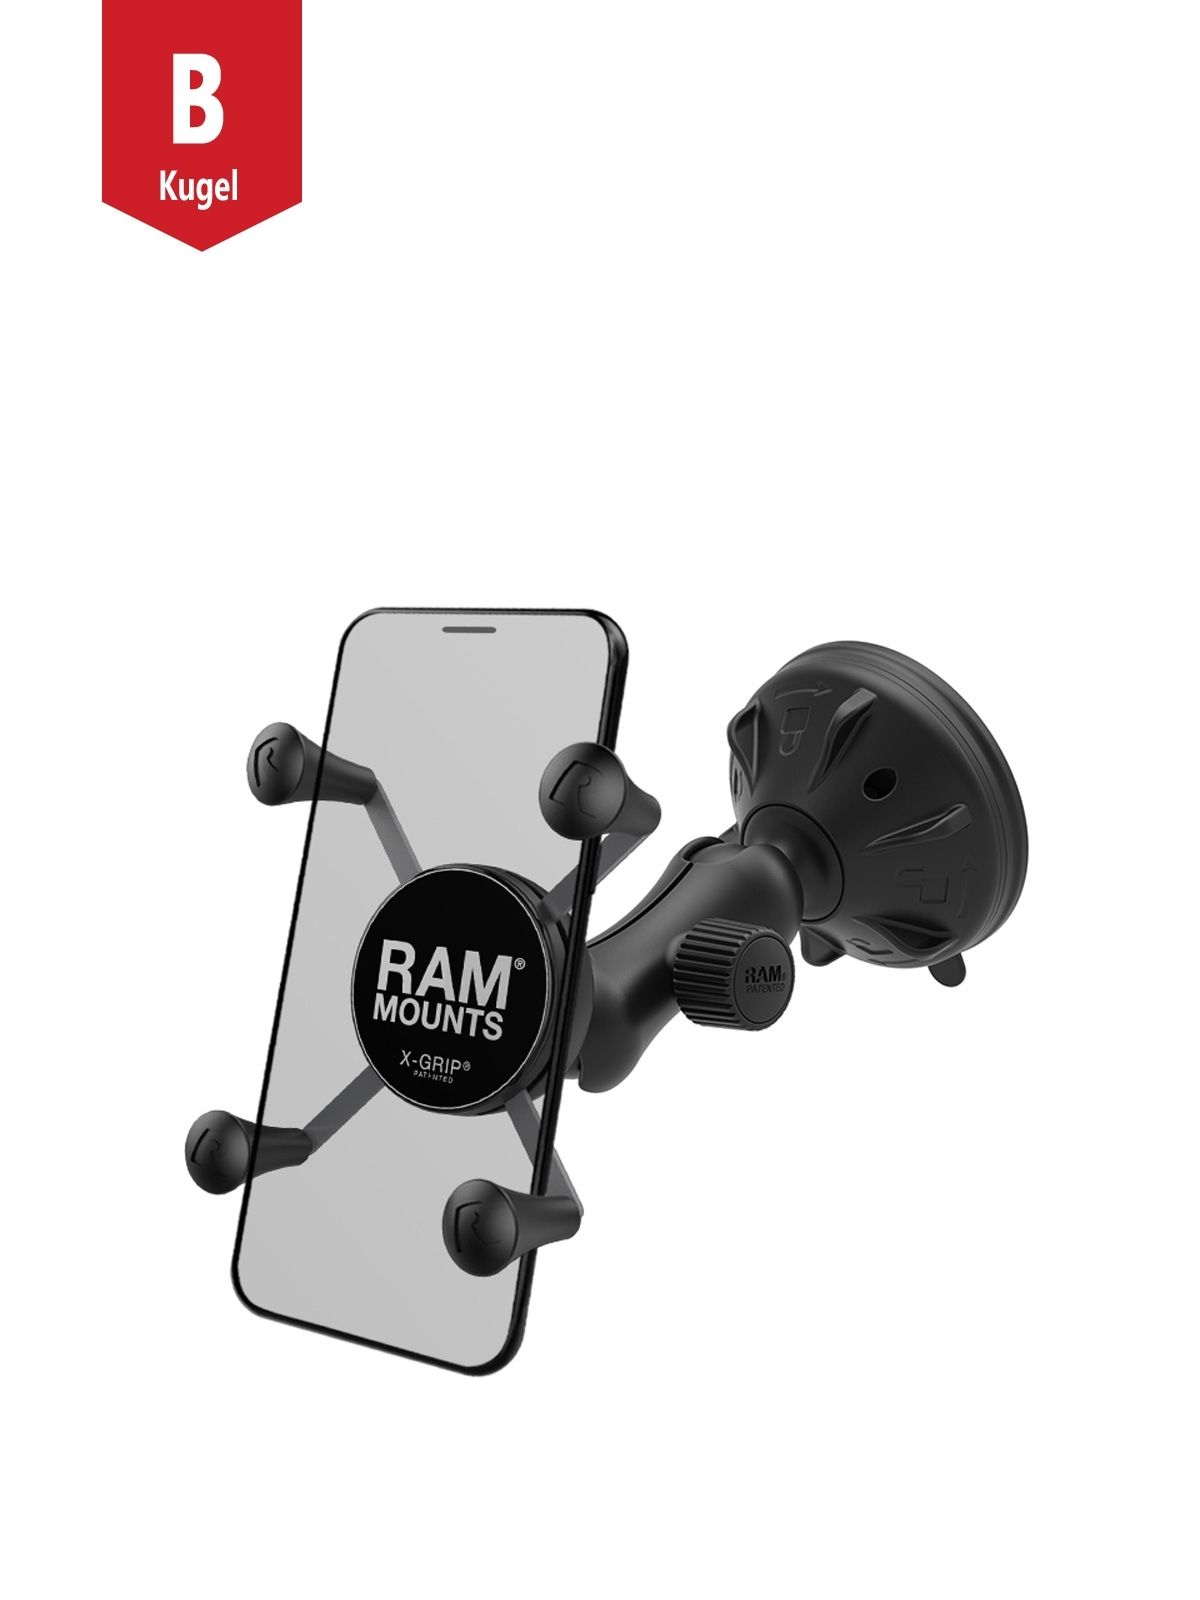 RAM Mounts Verbundstoff Saugfuss-Halterung mit X-Grip Halteklammer für Smartphones bis 82,6 mm Breite - B-Kugel (1 Zoll), kurzer Verbindungsarm (ca. 50 mm)